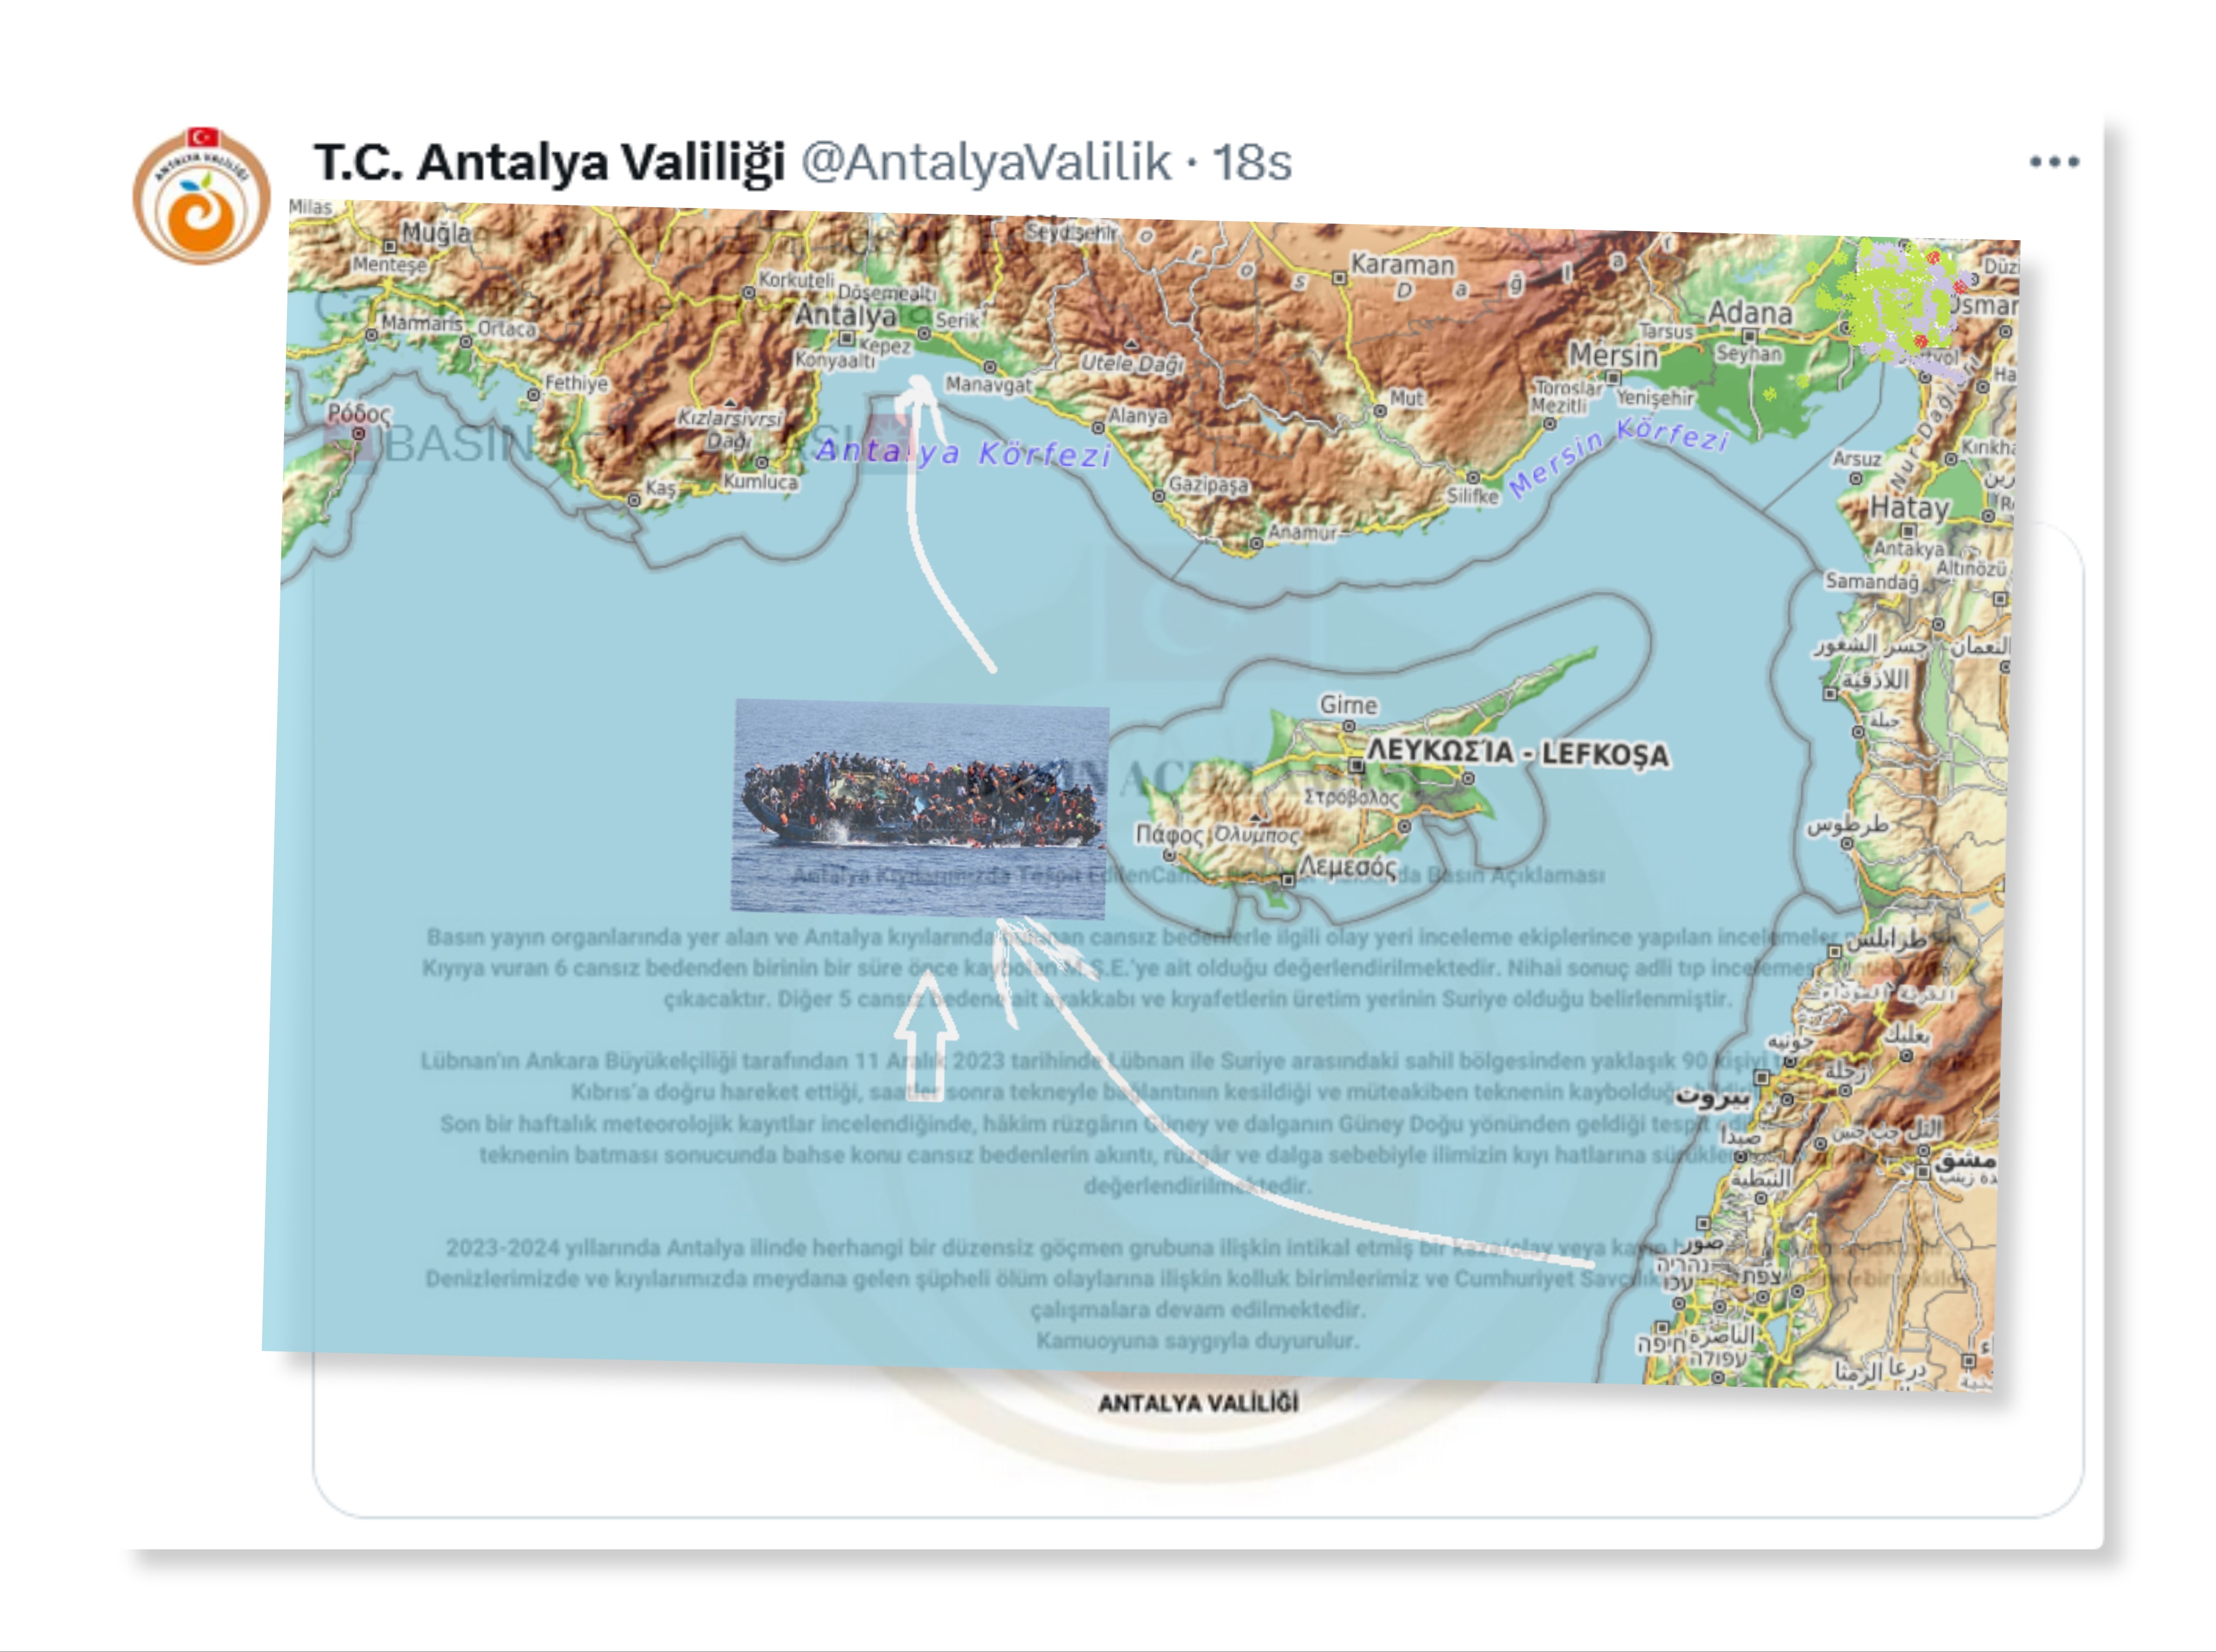 Antalya Valiliğinden Akdeniz Kıyılarında Tespit Edilen Cansız Bedenler Hakkında Basın Açıklaması